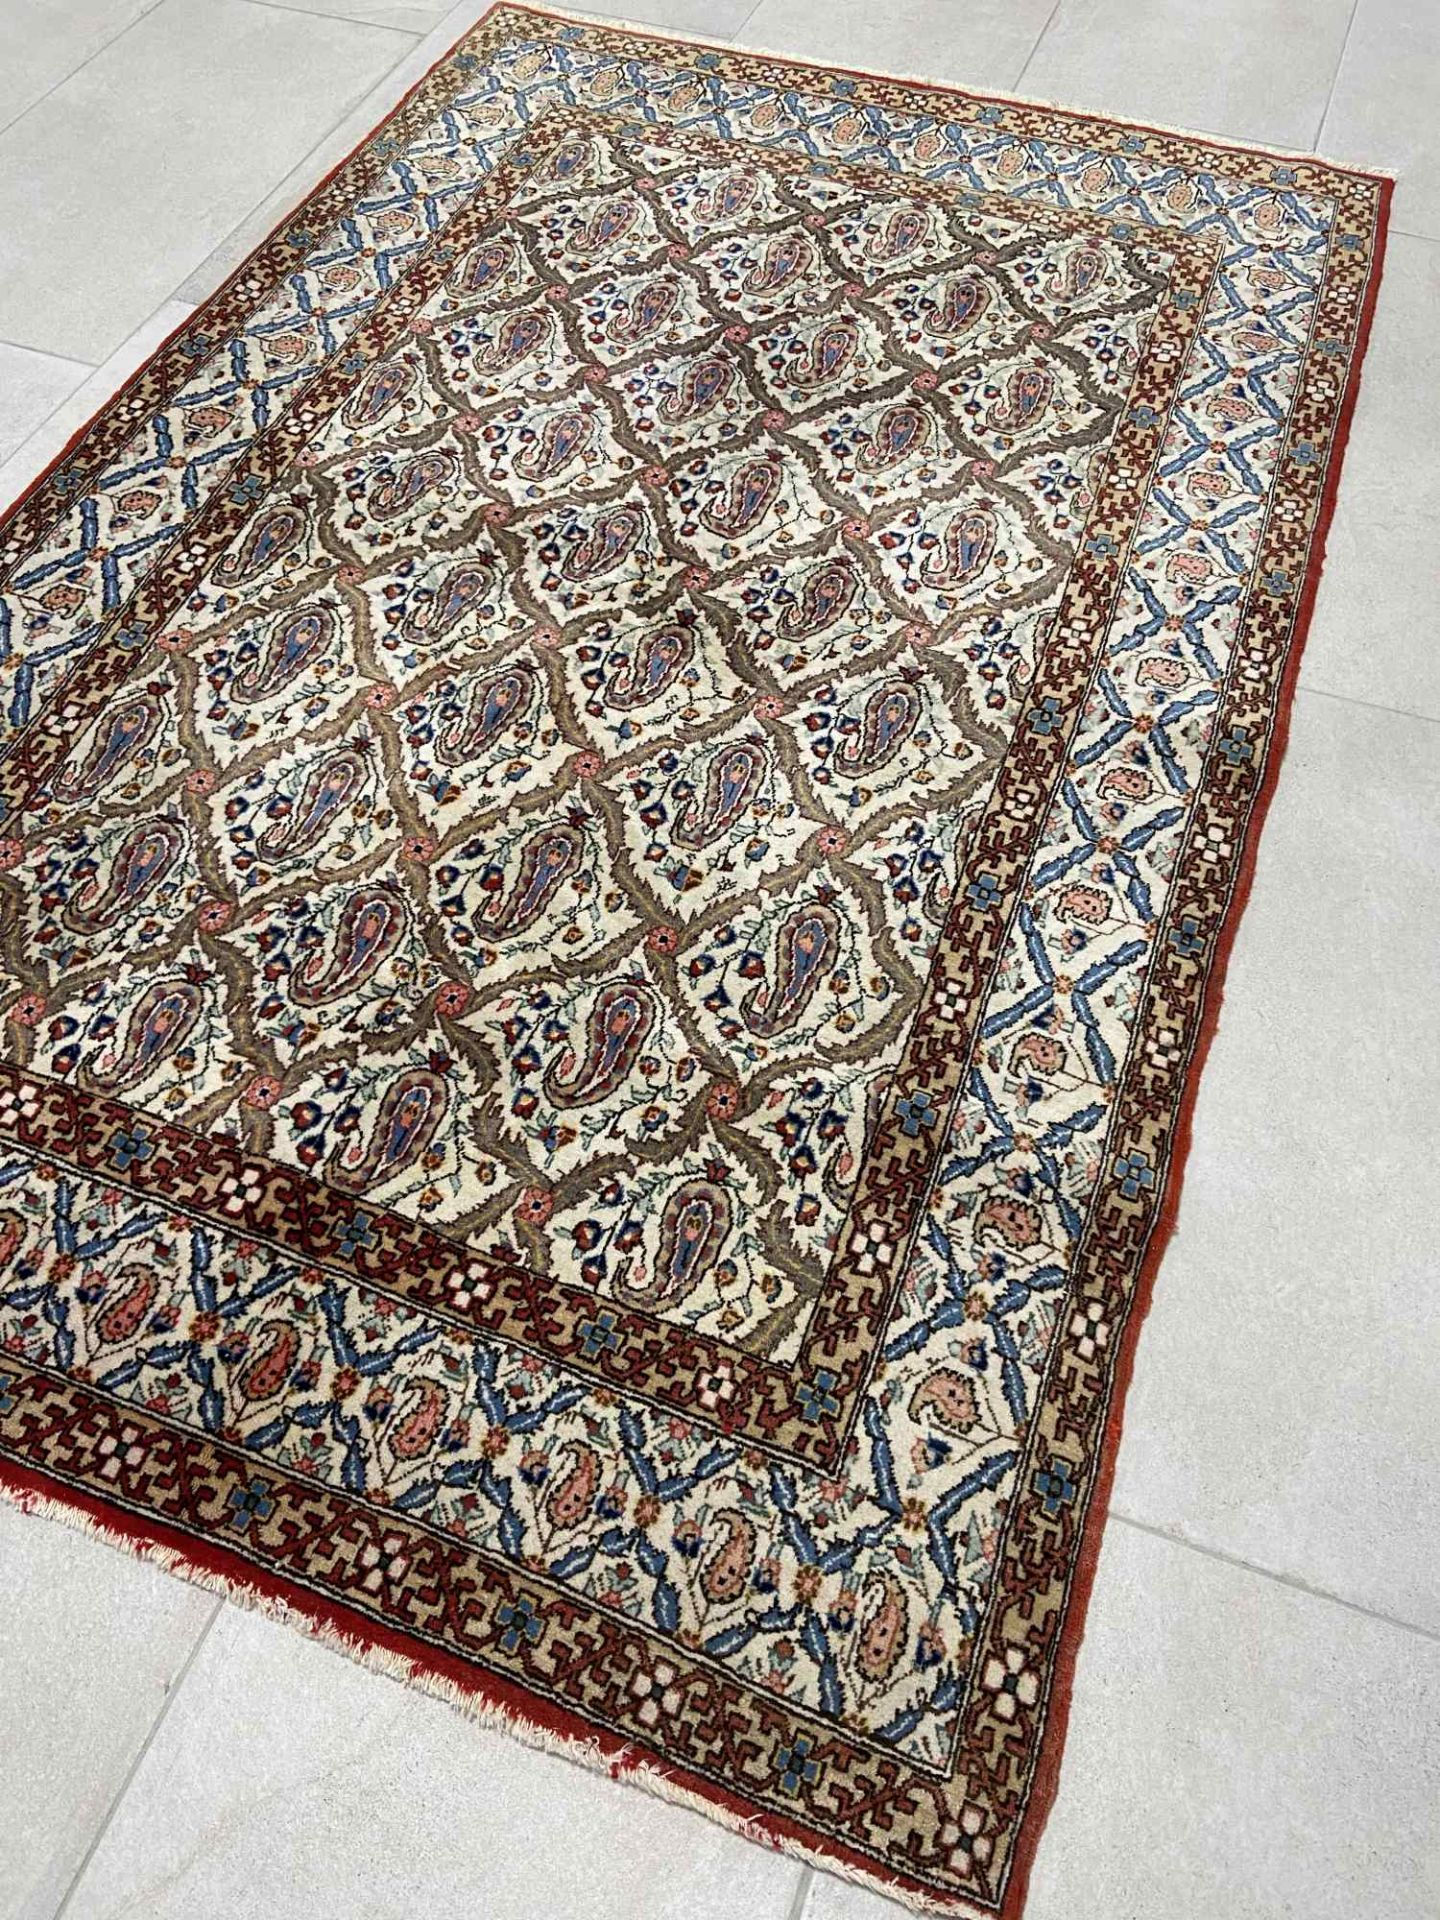 Persian carpet Ghom, 210x135cm. - Image 3 of 4